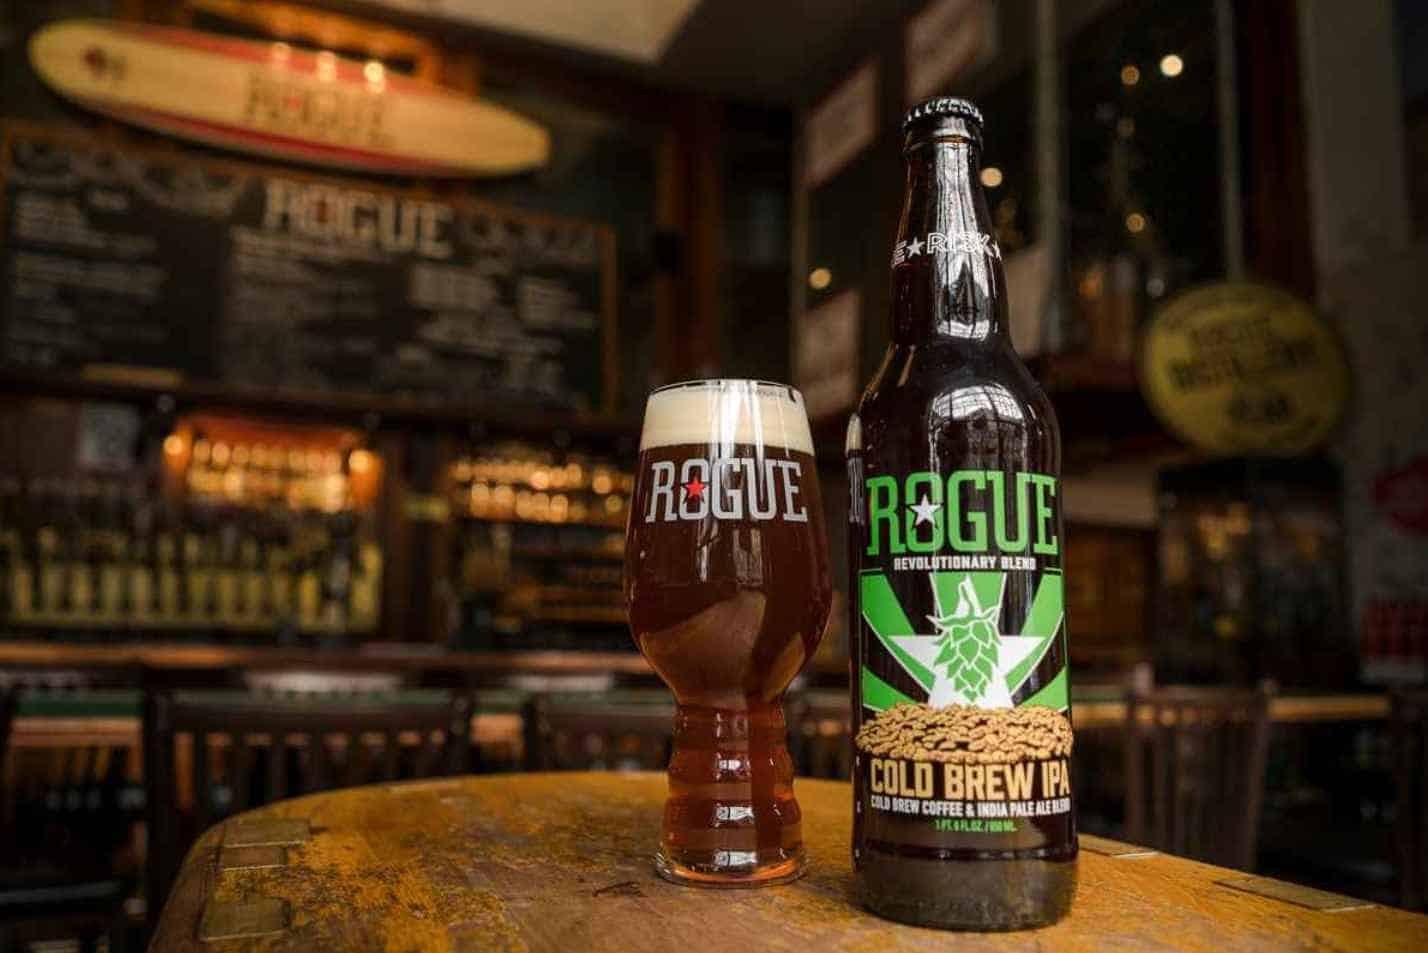 Cold Brew IPA by Rogue Ales